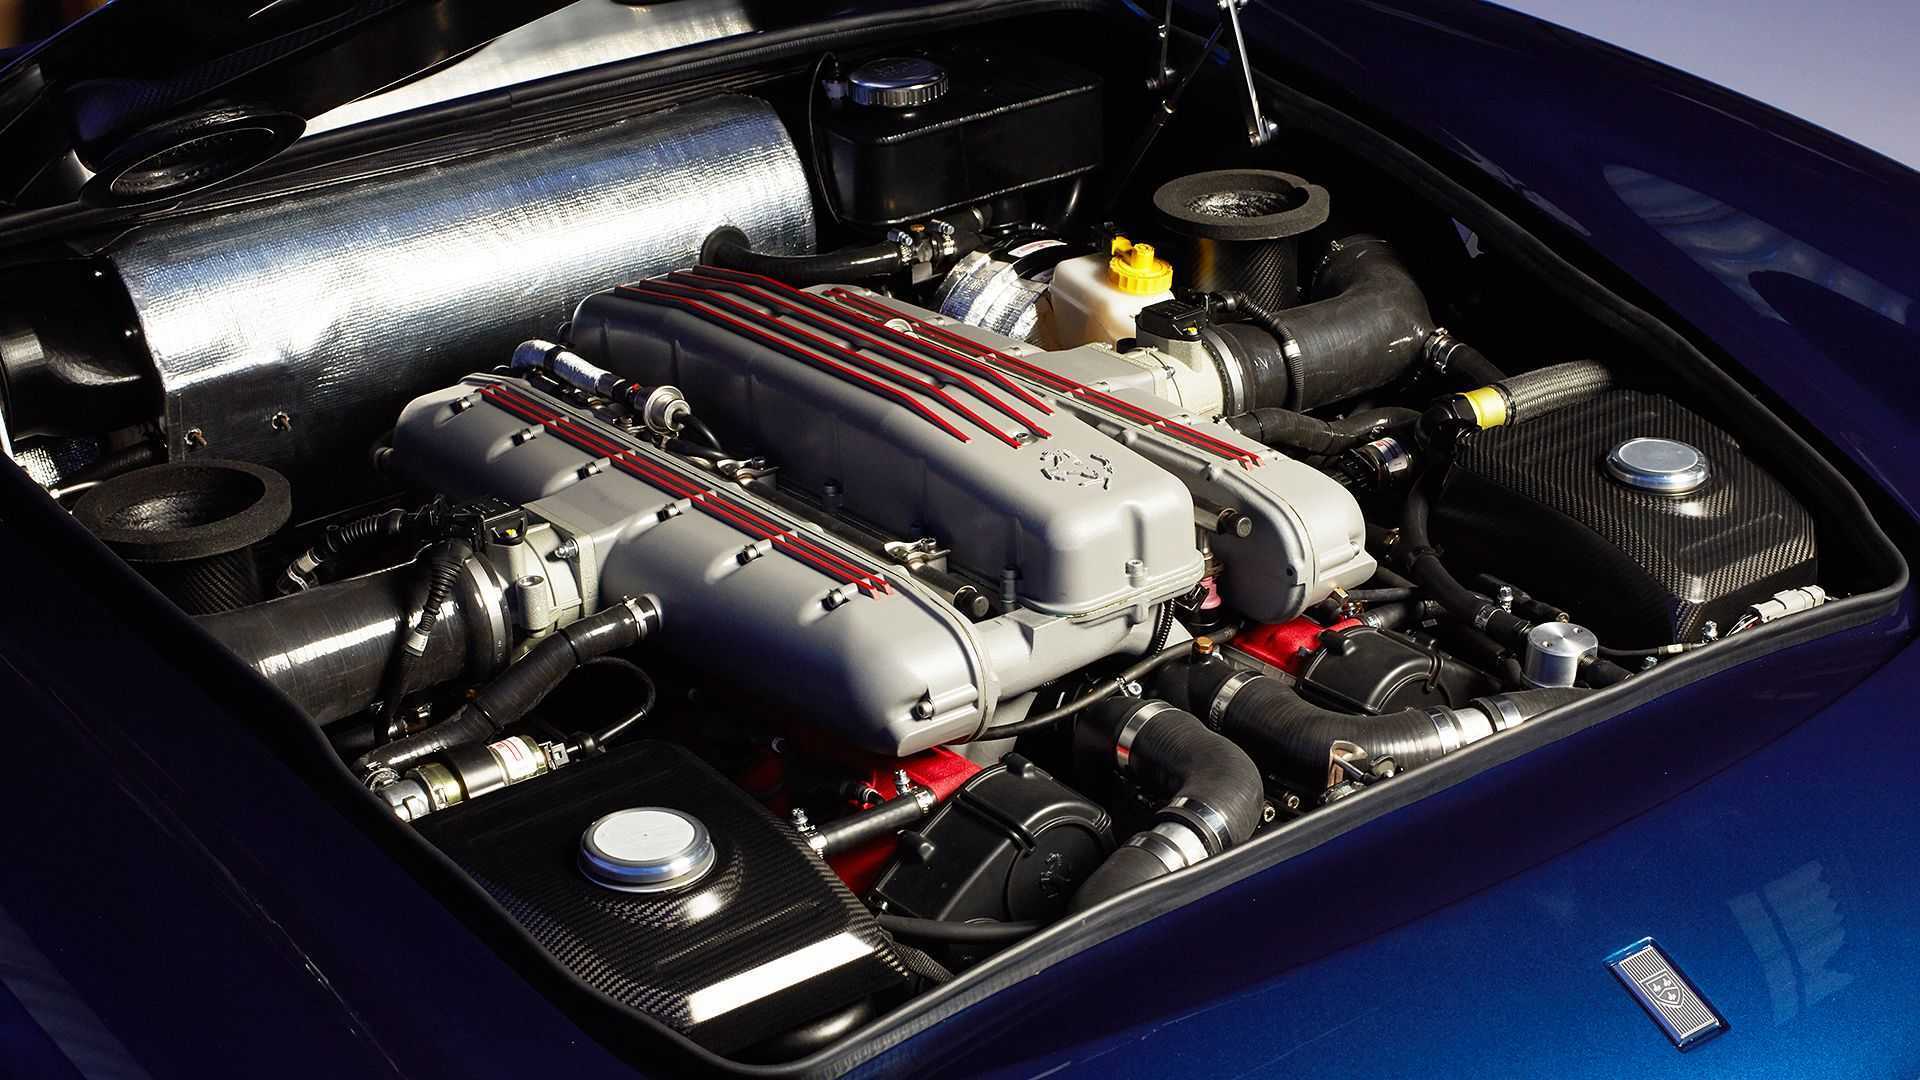 Под капотом находится модернизированный 5,5-литровый двигатель Ferrari V12, развивающий мощность 485 л.с.